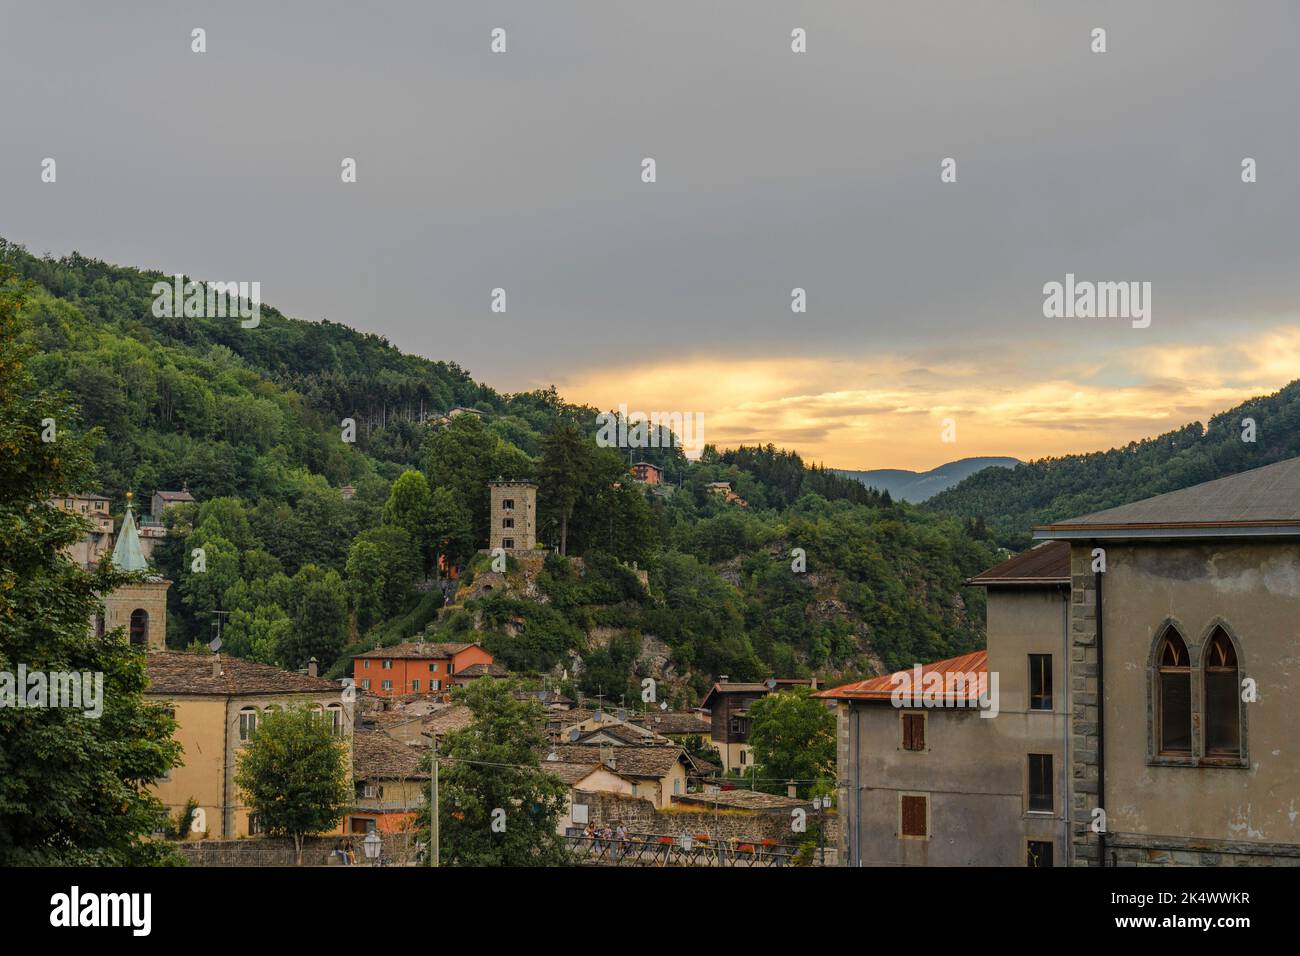 Vista panoramica del paese di Fiumalbo al tramonto - Modena - Italia Foto Stock